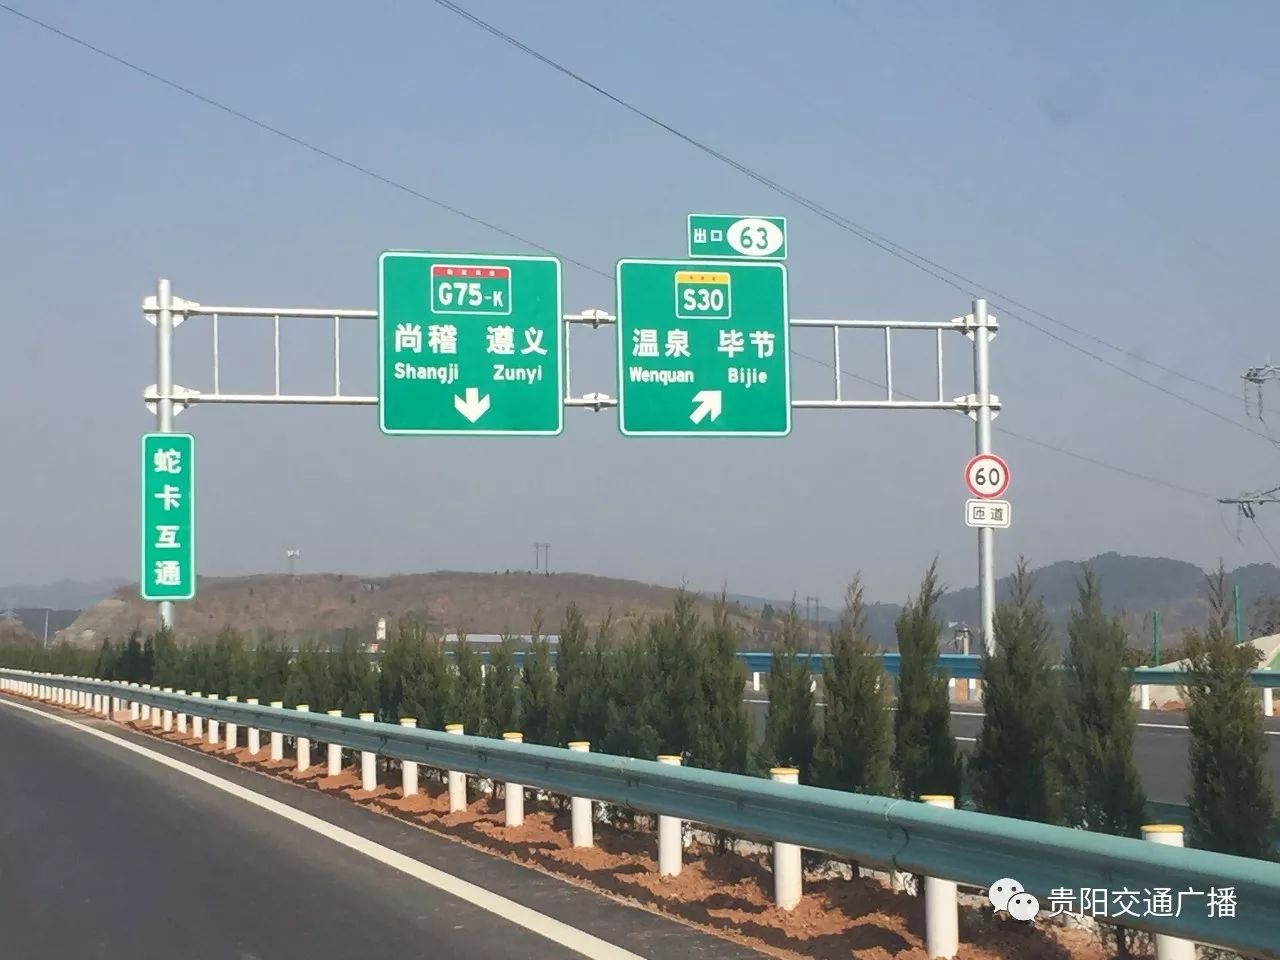 别走错:开阳西和开阳南要看清楚 遵贵扩容高速公路上有两个开阳站